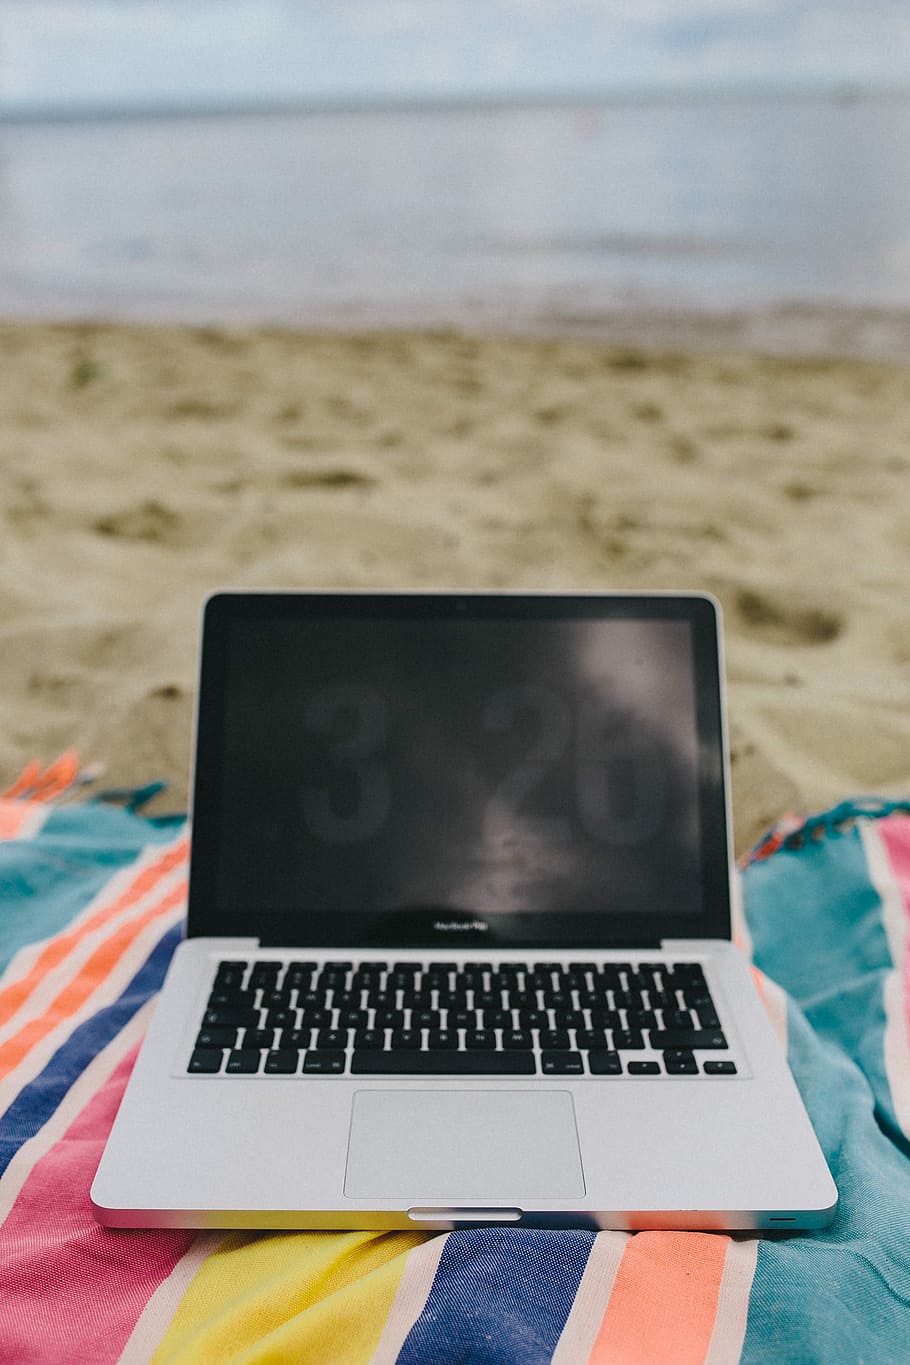 вместе, пляж, песок, лето, одеяло, каникулы, отпуск, море, портативный компьютер, компьютер